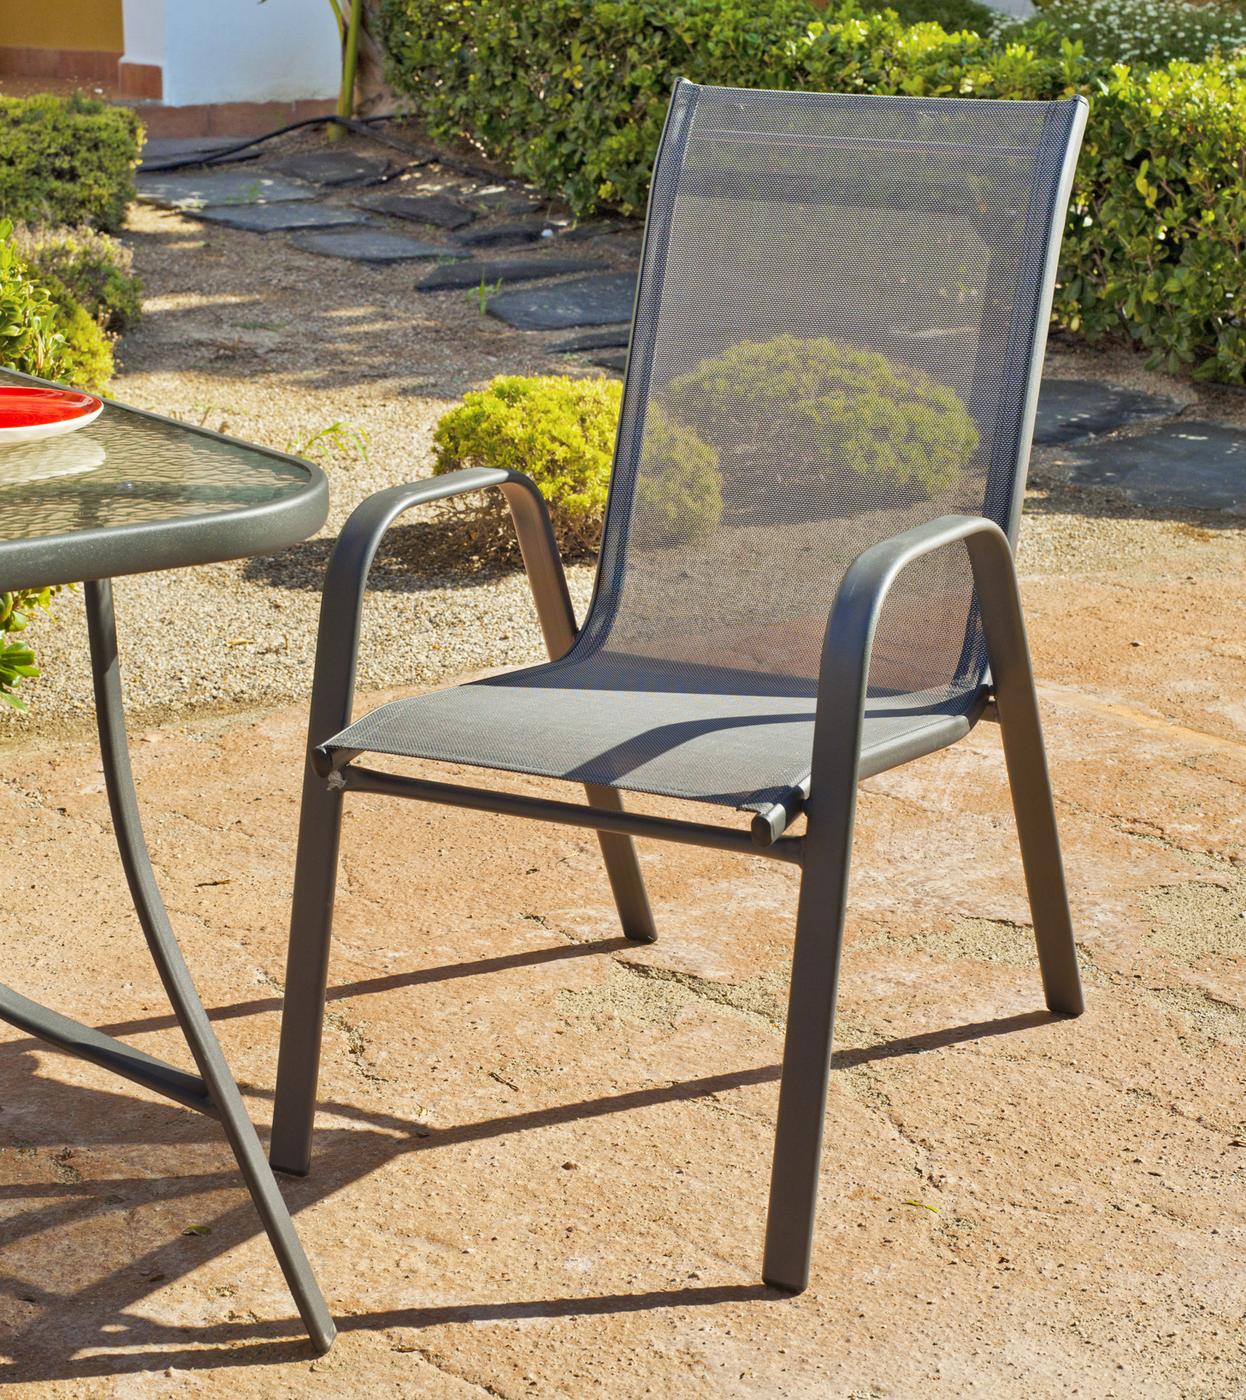 Conjunto Acero Sulam-150 - Conjunto de acero color antracita: mesa de 150 cm. Con tapa de cristal  templado y 4 sillones de acero